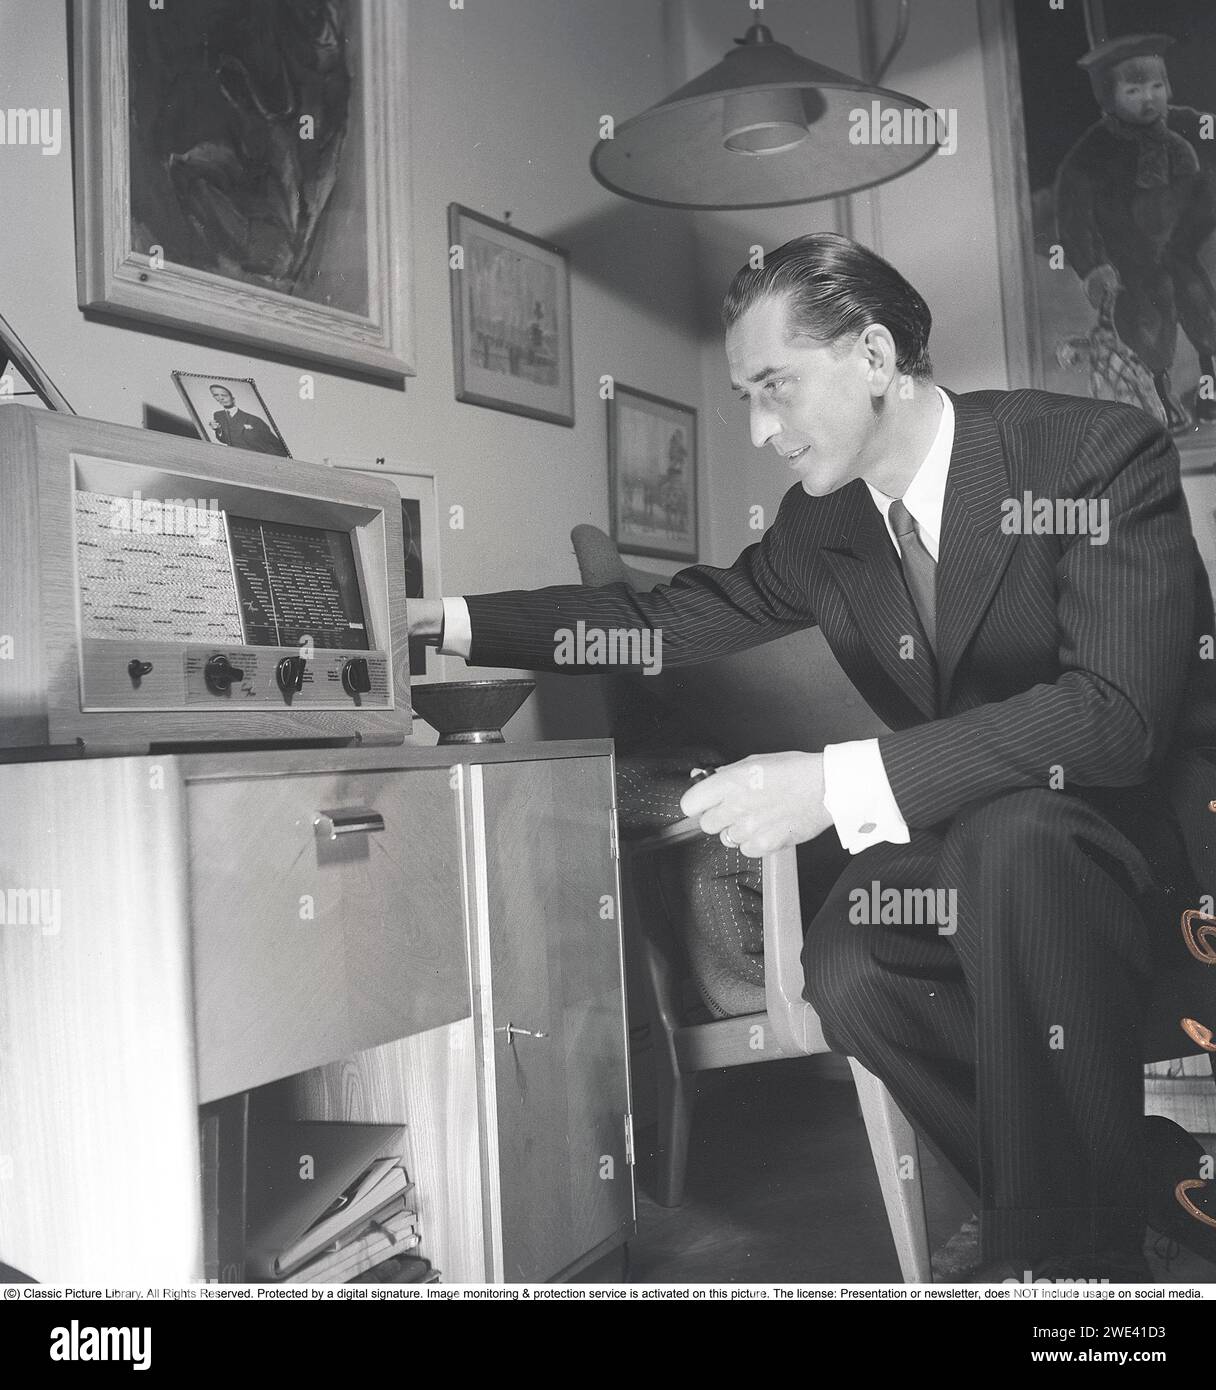 La radio dans les années 1940 Un homme bien habillé dans sa maison est vu en train d'écouter la radio. Il est Lauritz Falk , 1909-1990 ans , acteur suédois-norvégien. 1946. Kristoffersson réf. T63-5 Banque D'Images